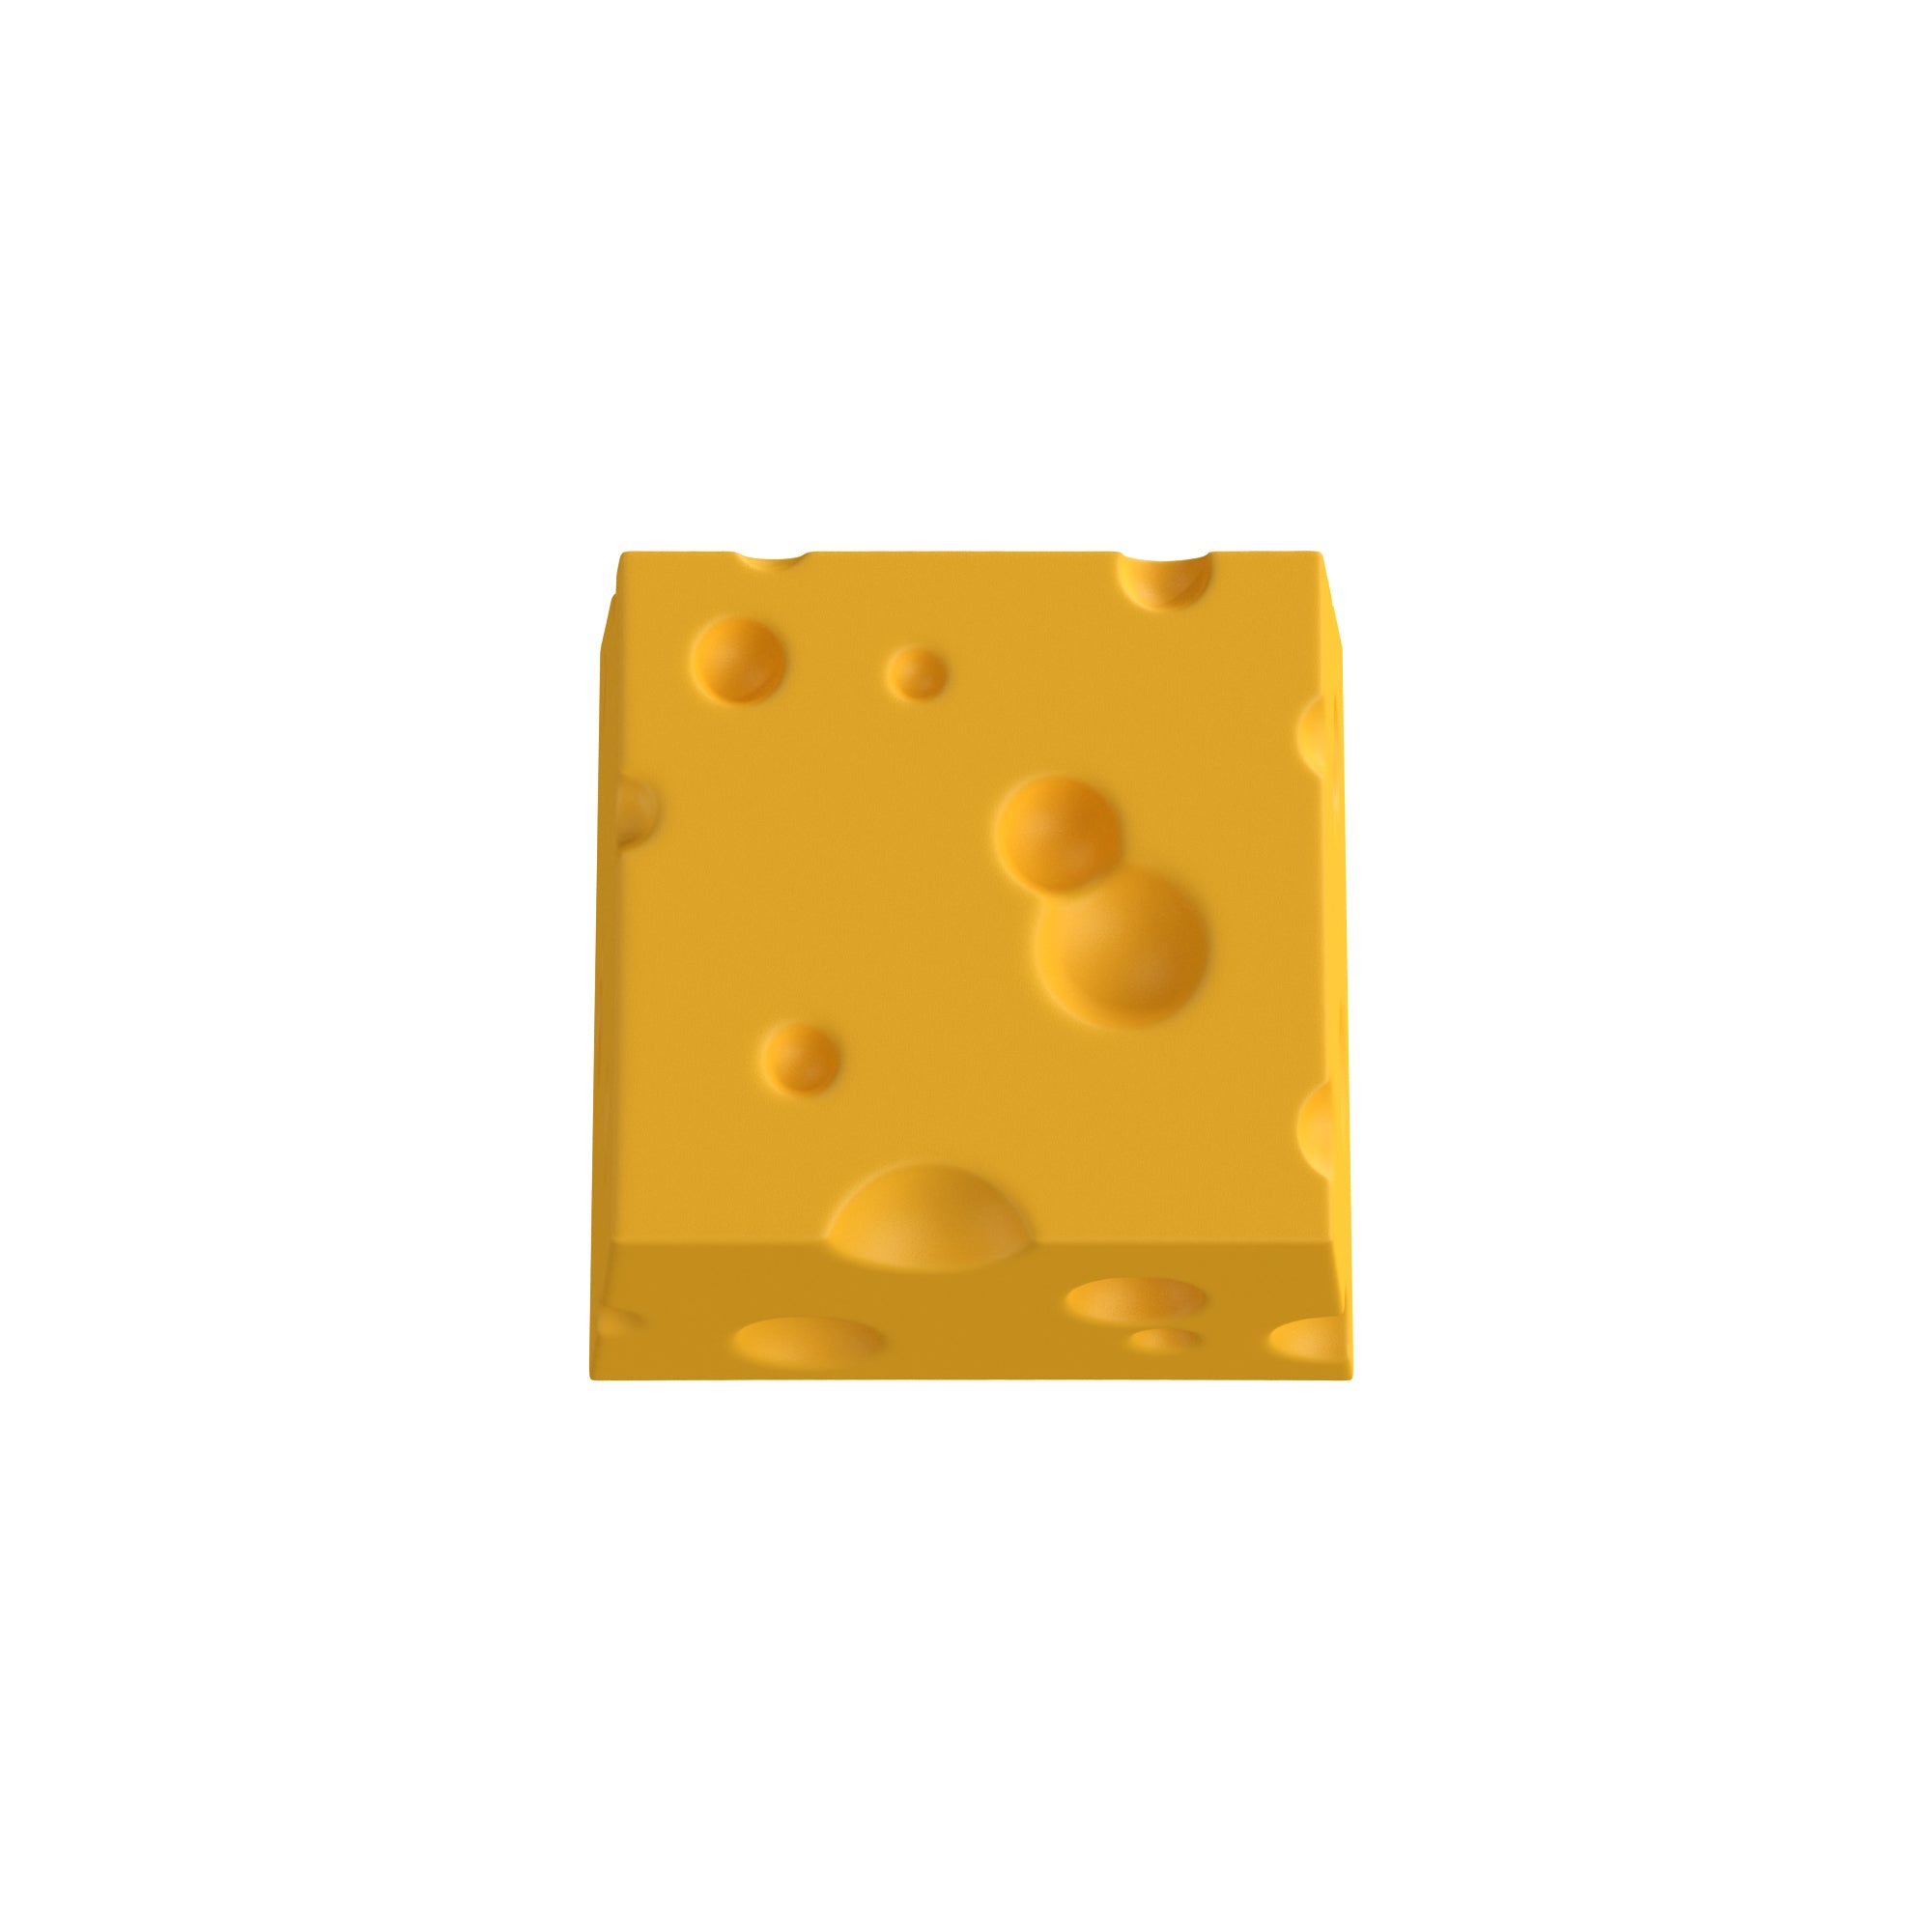 Cheese Artisan Handmade Keycap